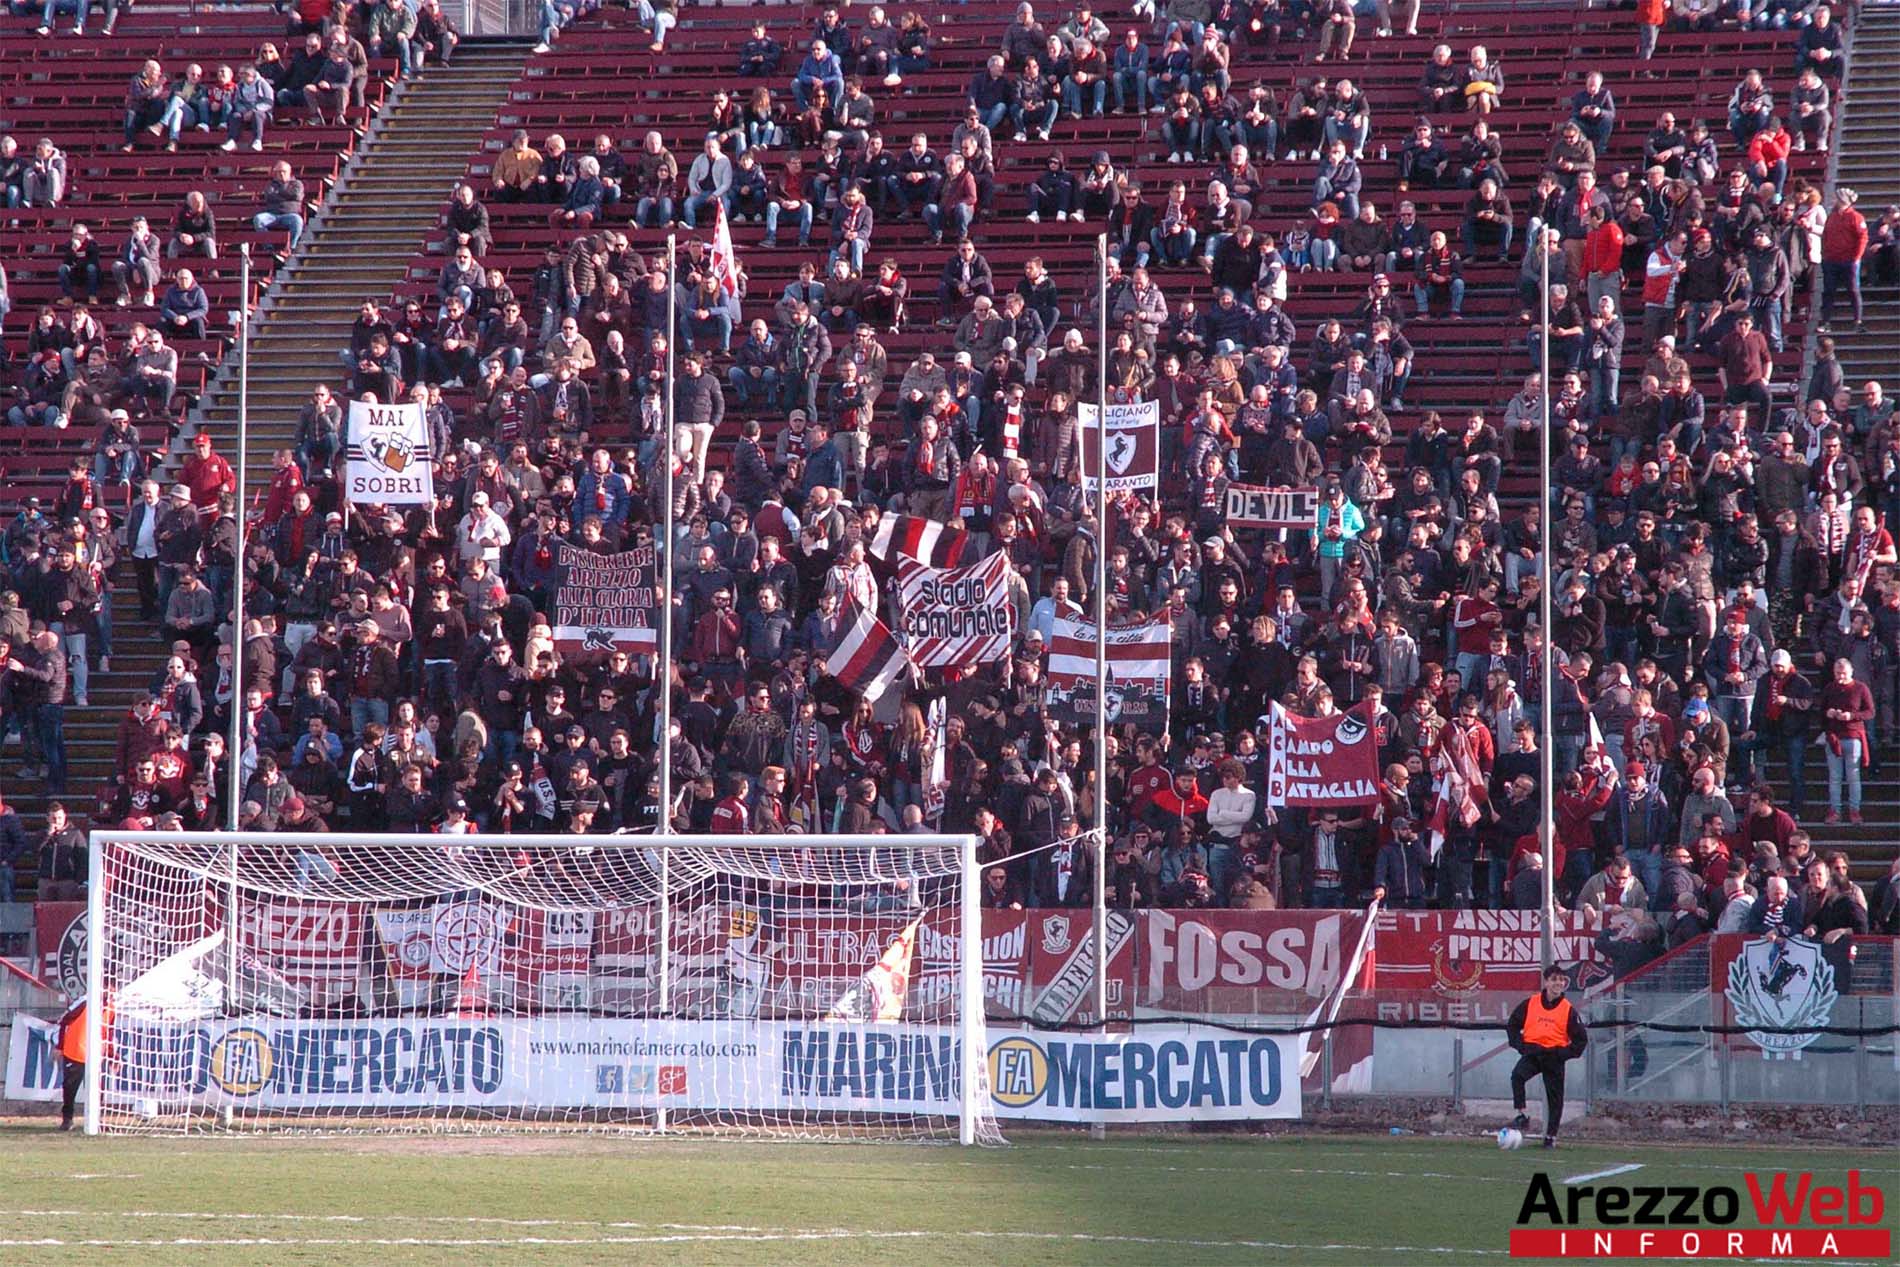 “ViviAMO la partita”: la nuova campagna sociale della Società Sportiva Arezzo